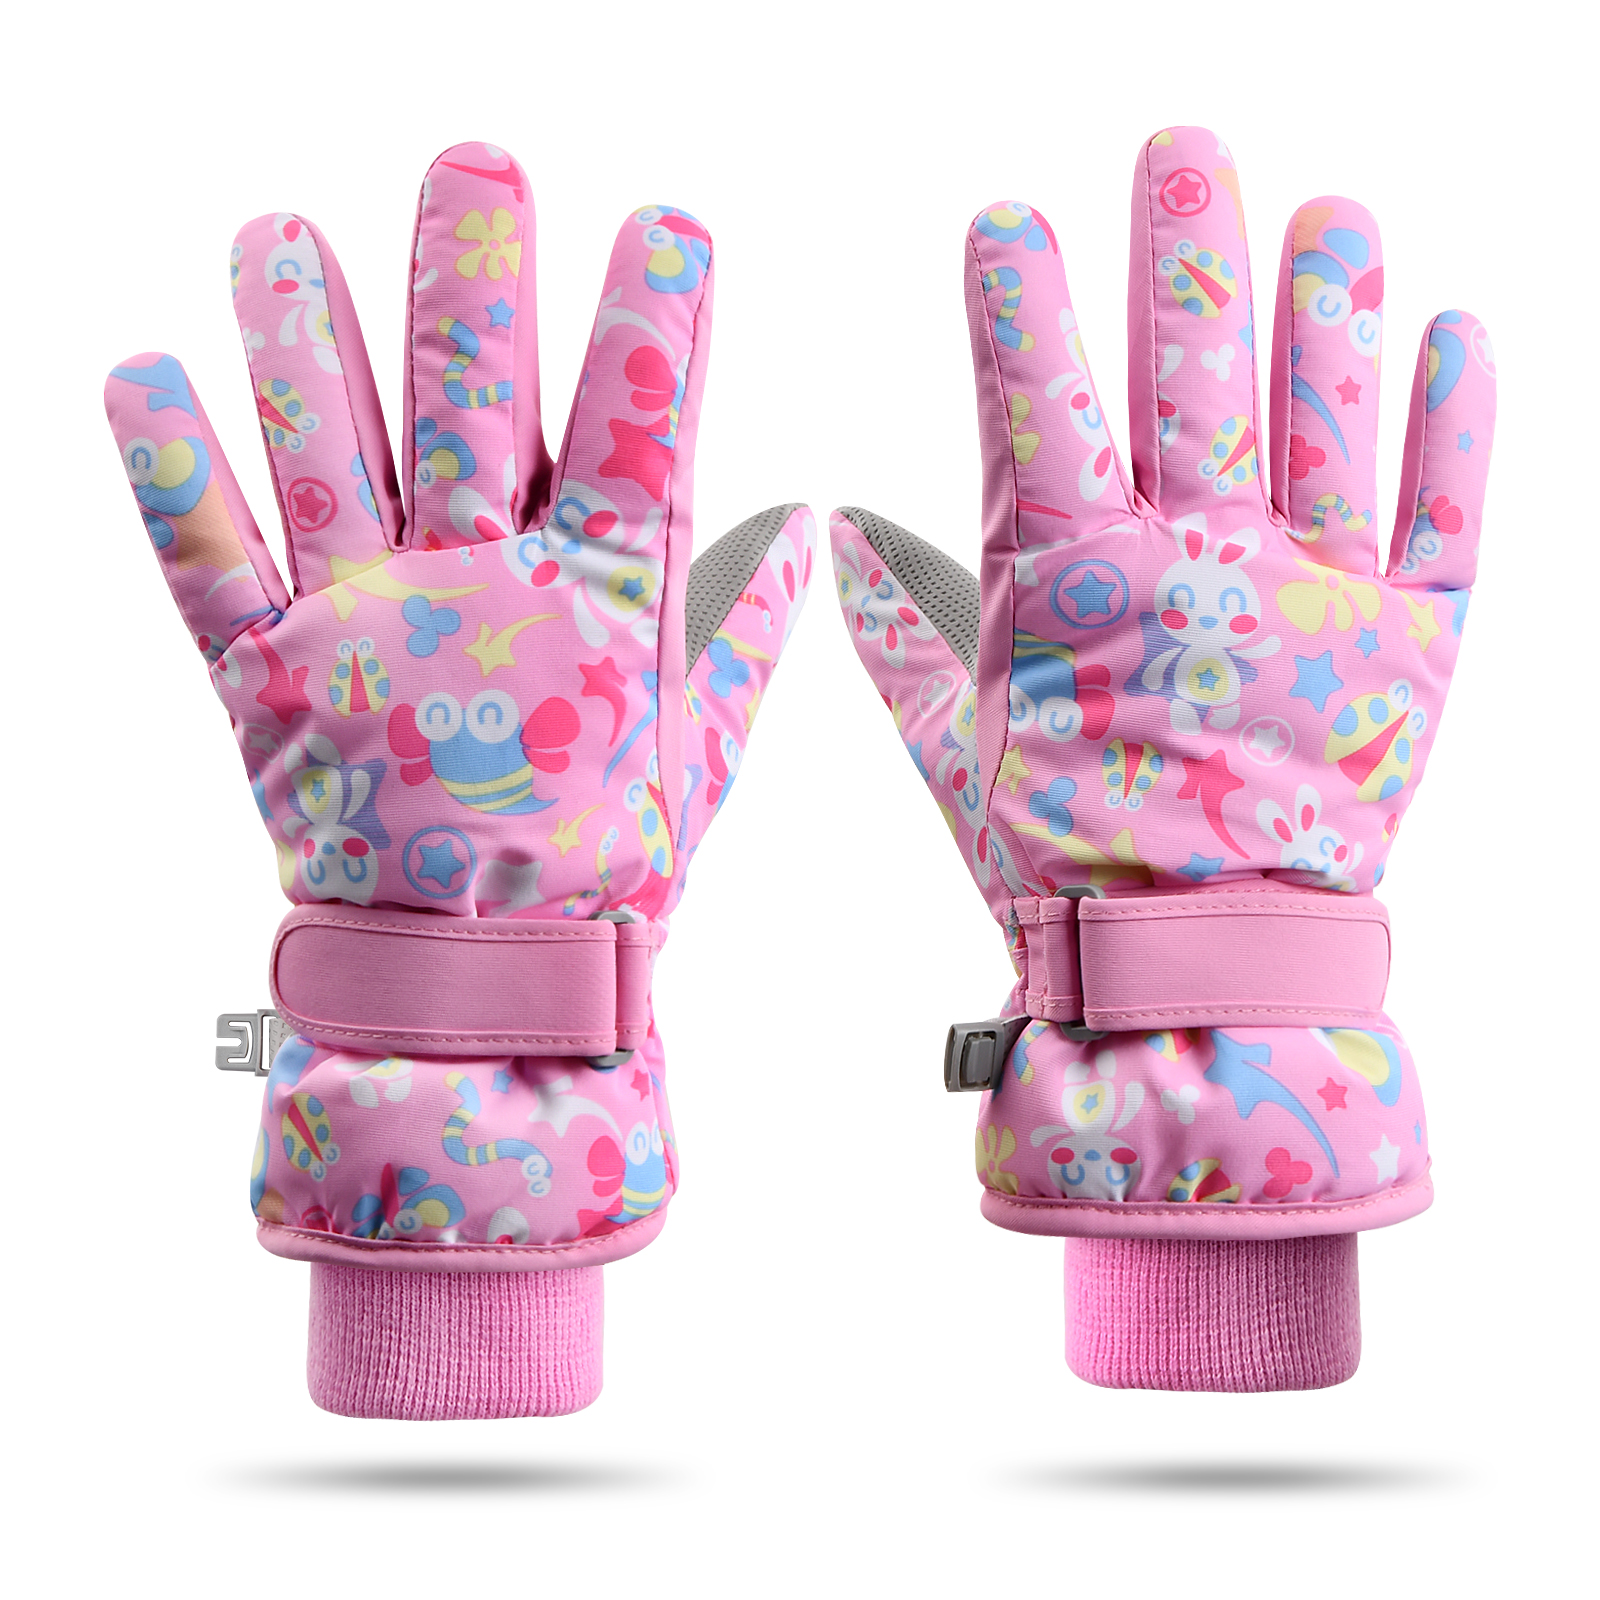 1 par de guantes de invierno para niños, mitones para niños pequeños, para  esquiar, nieve, niñas, im Zhivalor OTTO-221905-2